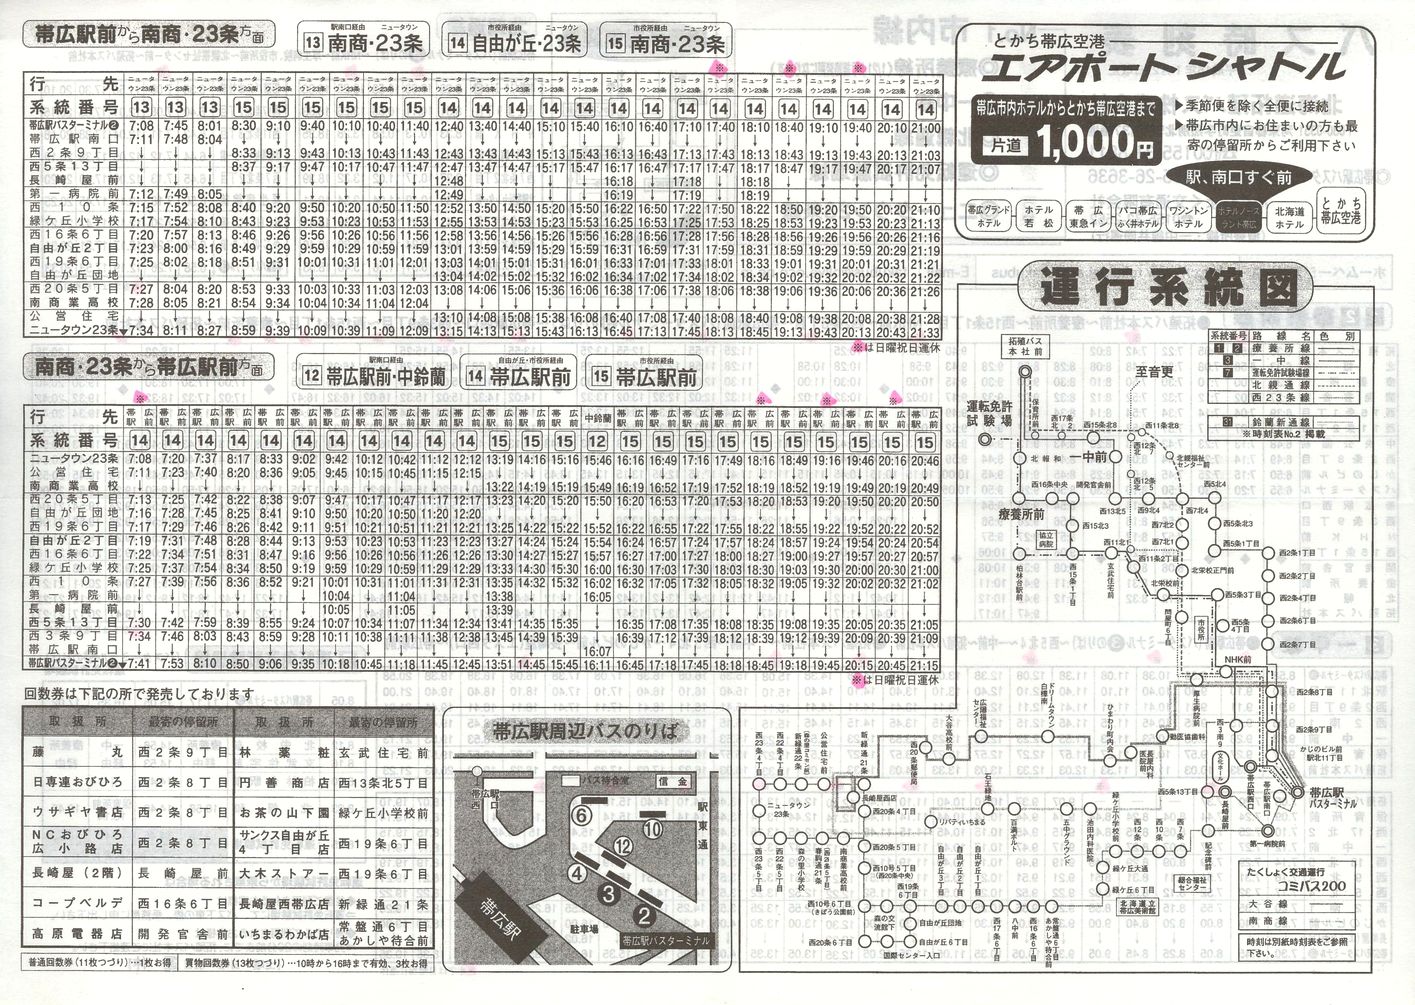 2003-01-21改正_北海道拓殖バス・たくしょく交通_時刻表１裏面